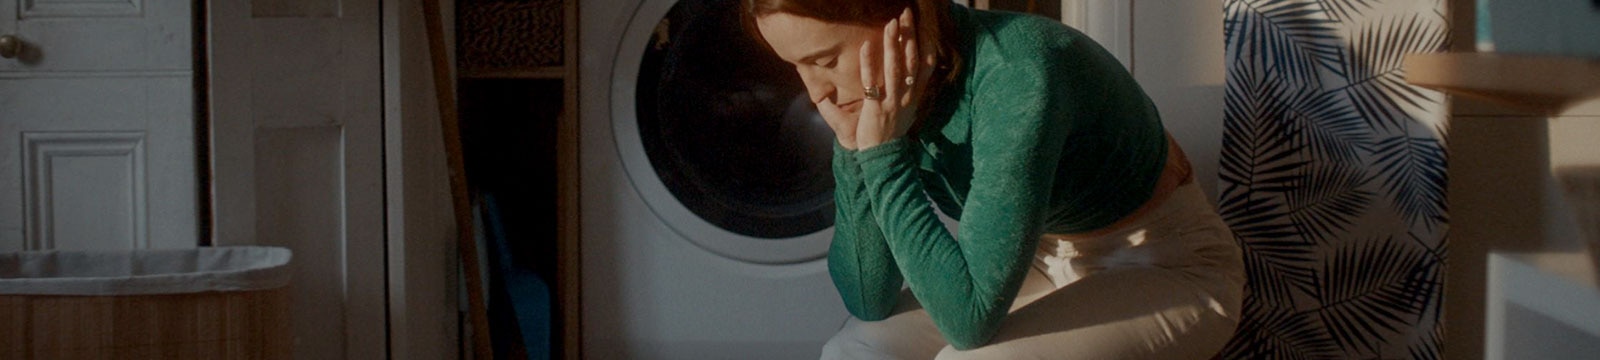 Una donna stanca è seduta da sola in una lavanderia 